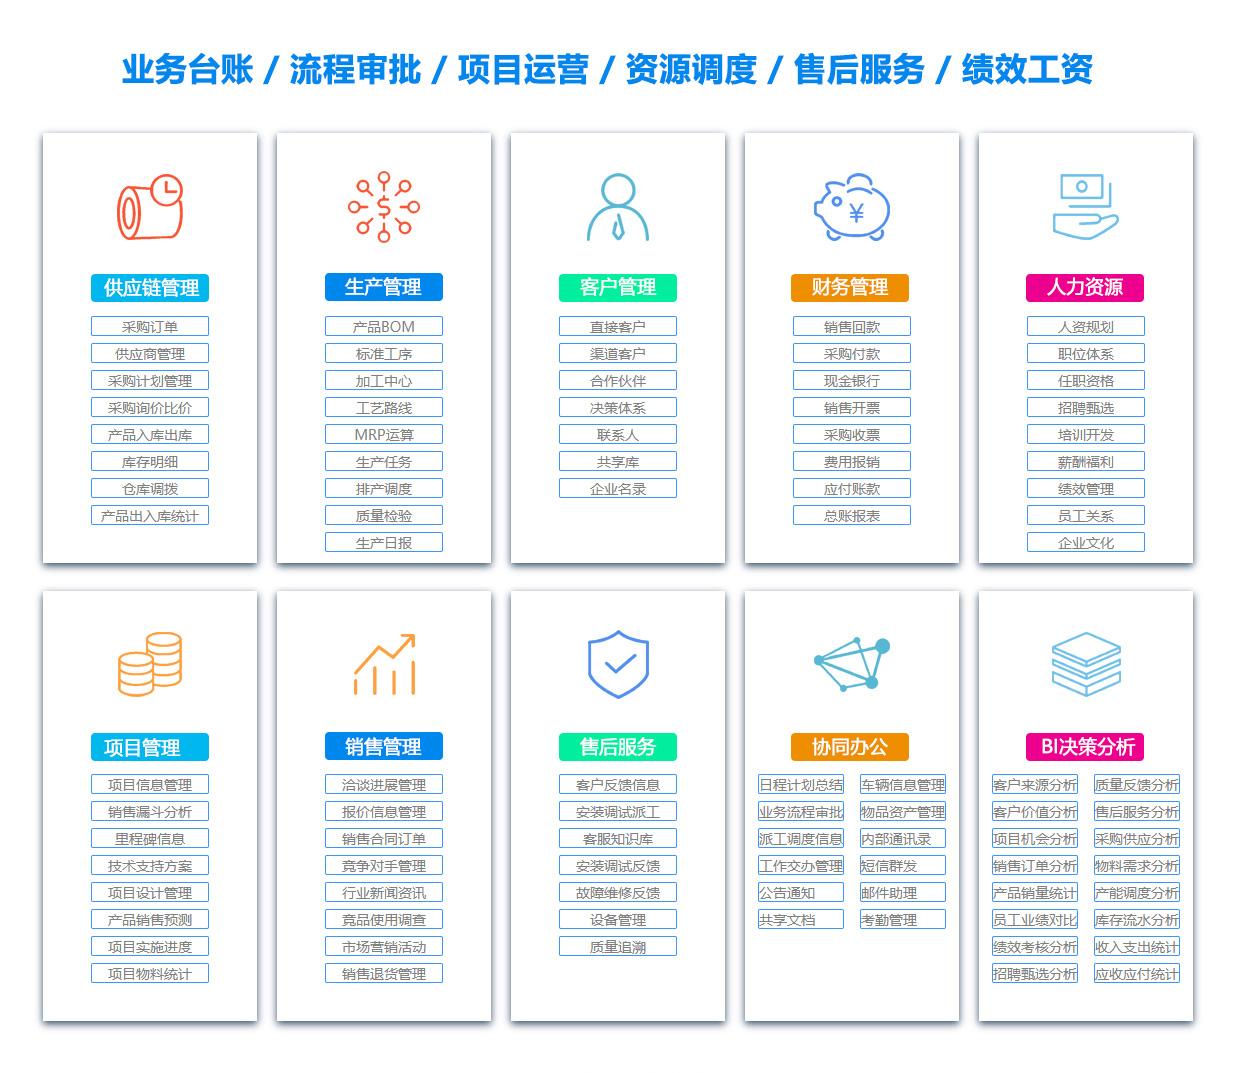 贵州SCM:供应链管理系统